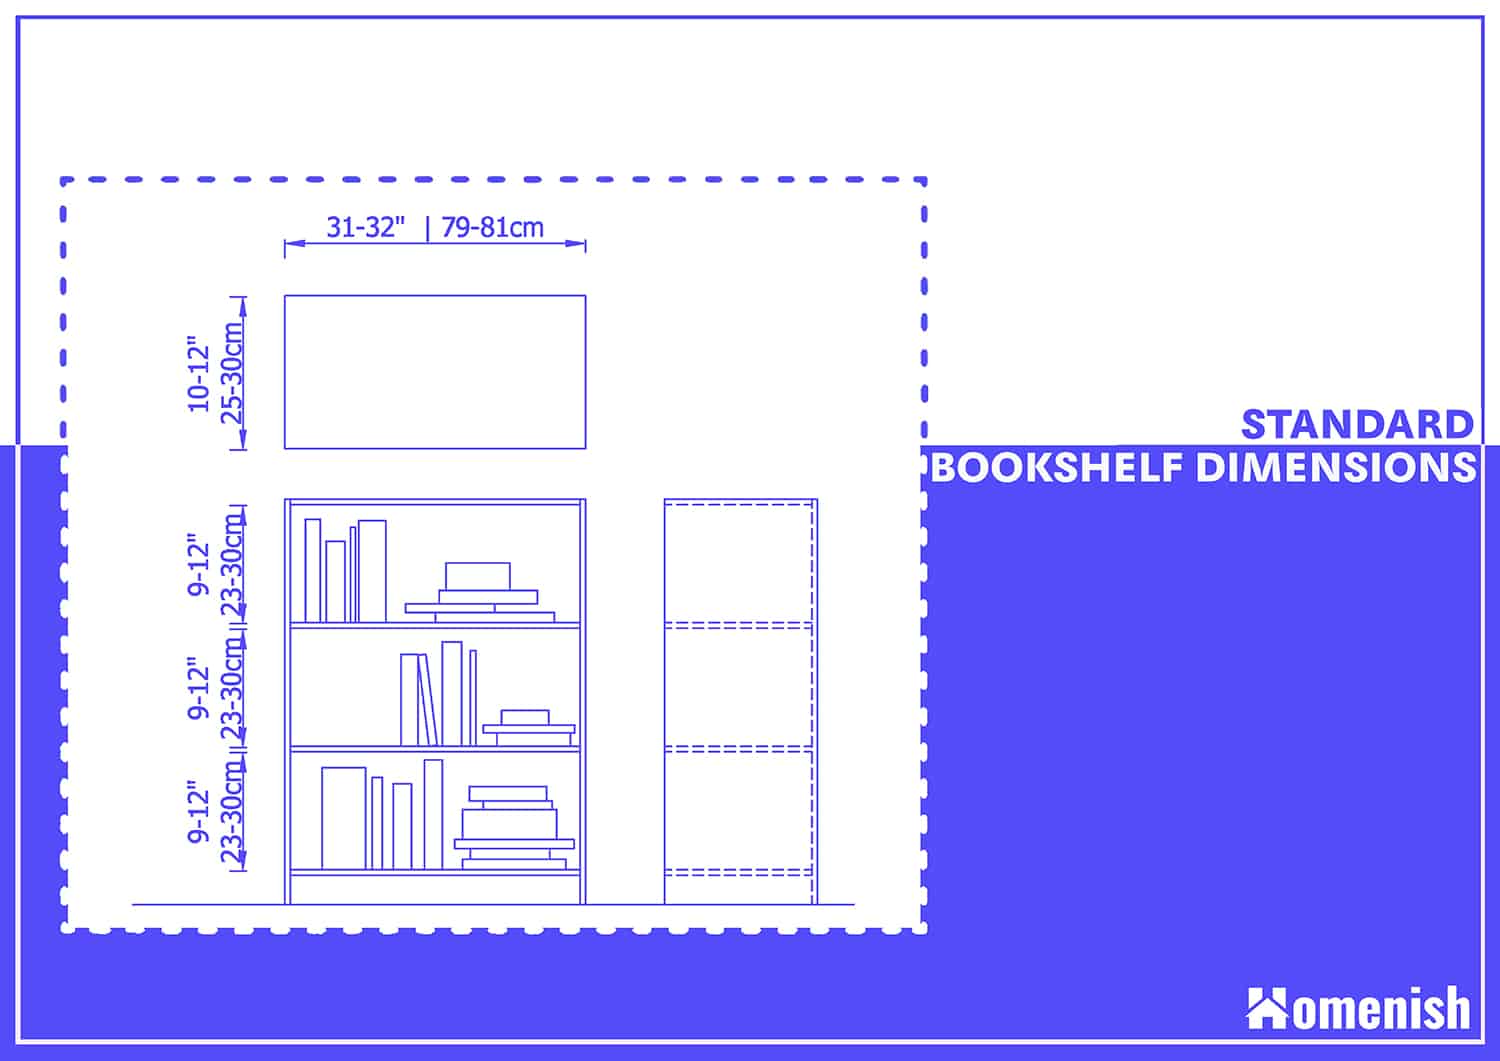 Standard Bookshelf Dimensions